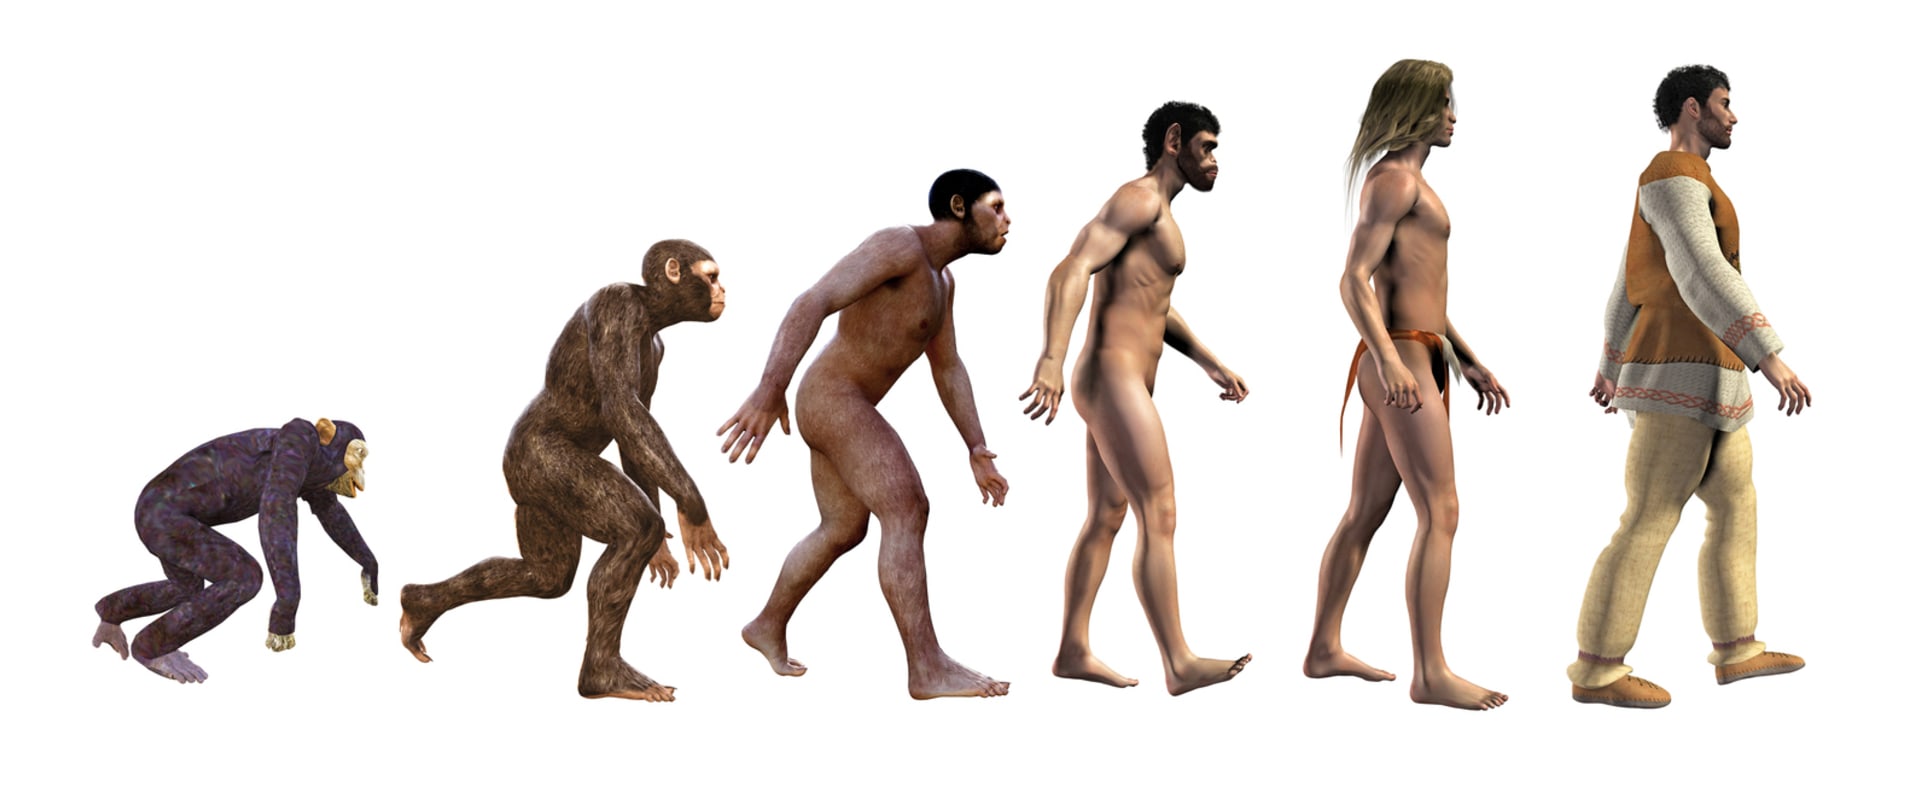 Evoluce člověka je už dobře zmapovaná